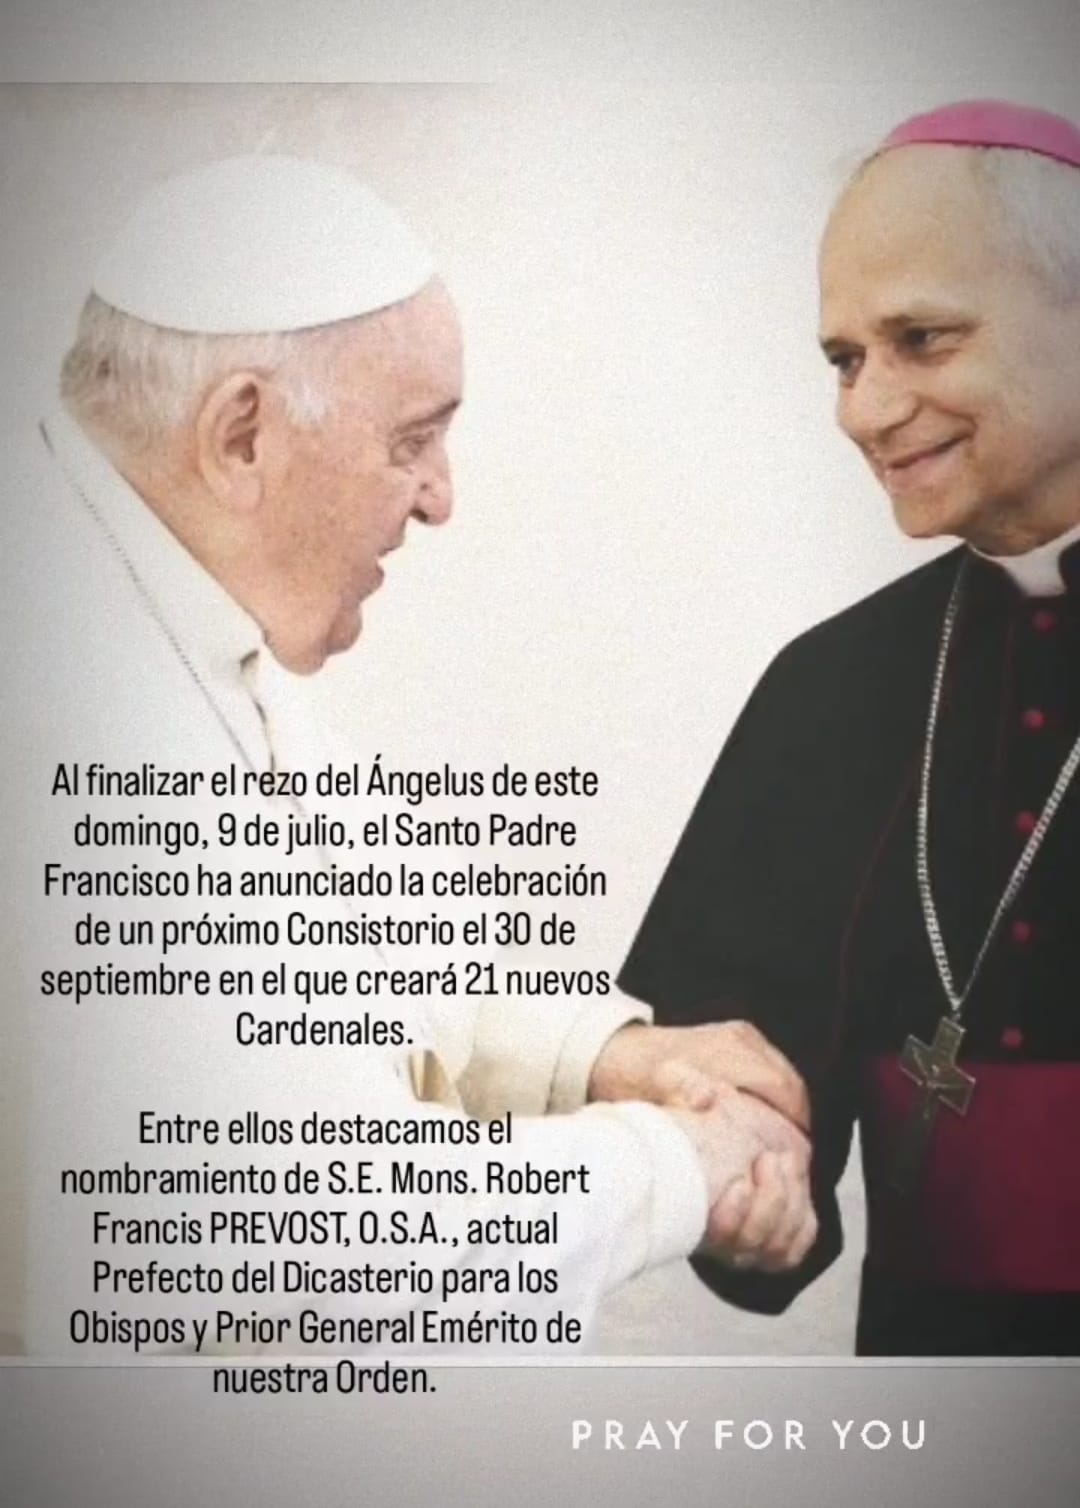 El papa Francisco anunció 21 nuevos cardenales, entre ellos a S.E. Mons. Robert Francis PREVOST, O.S.A.